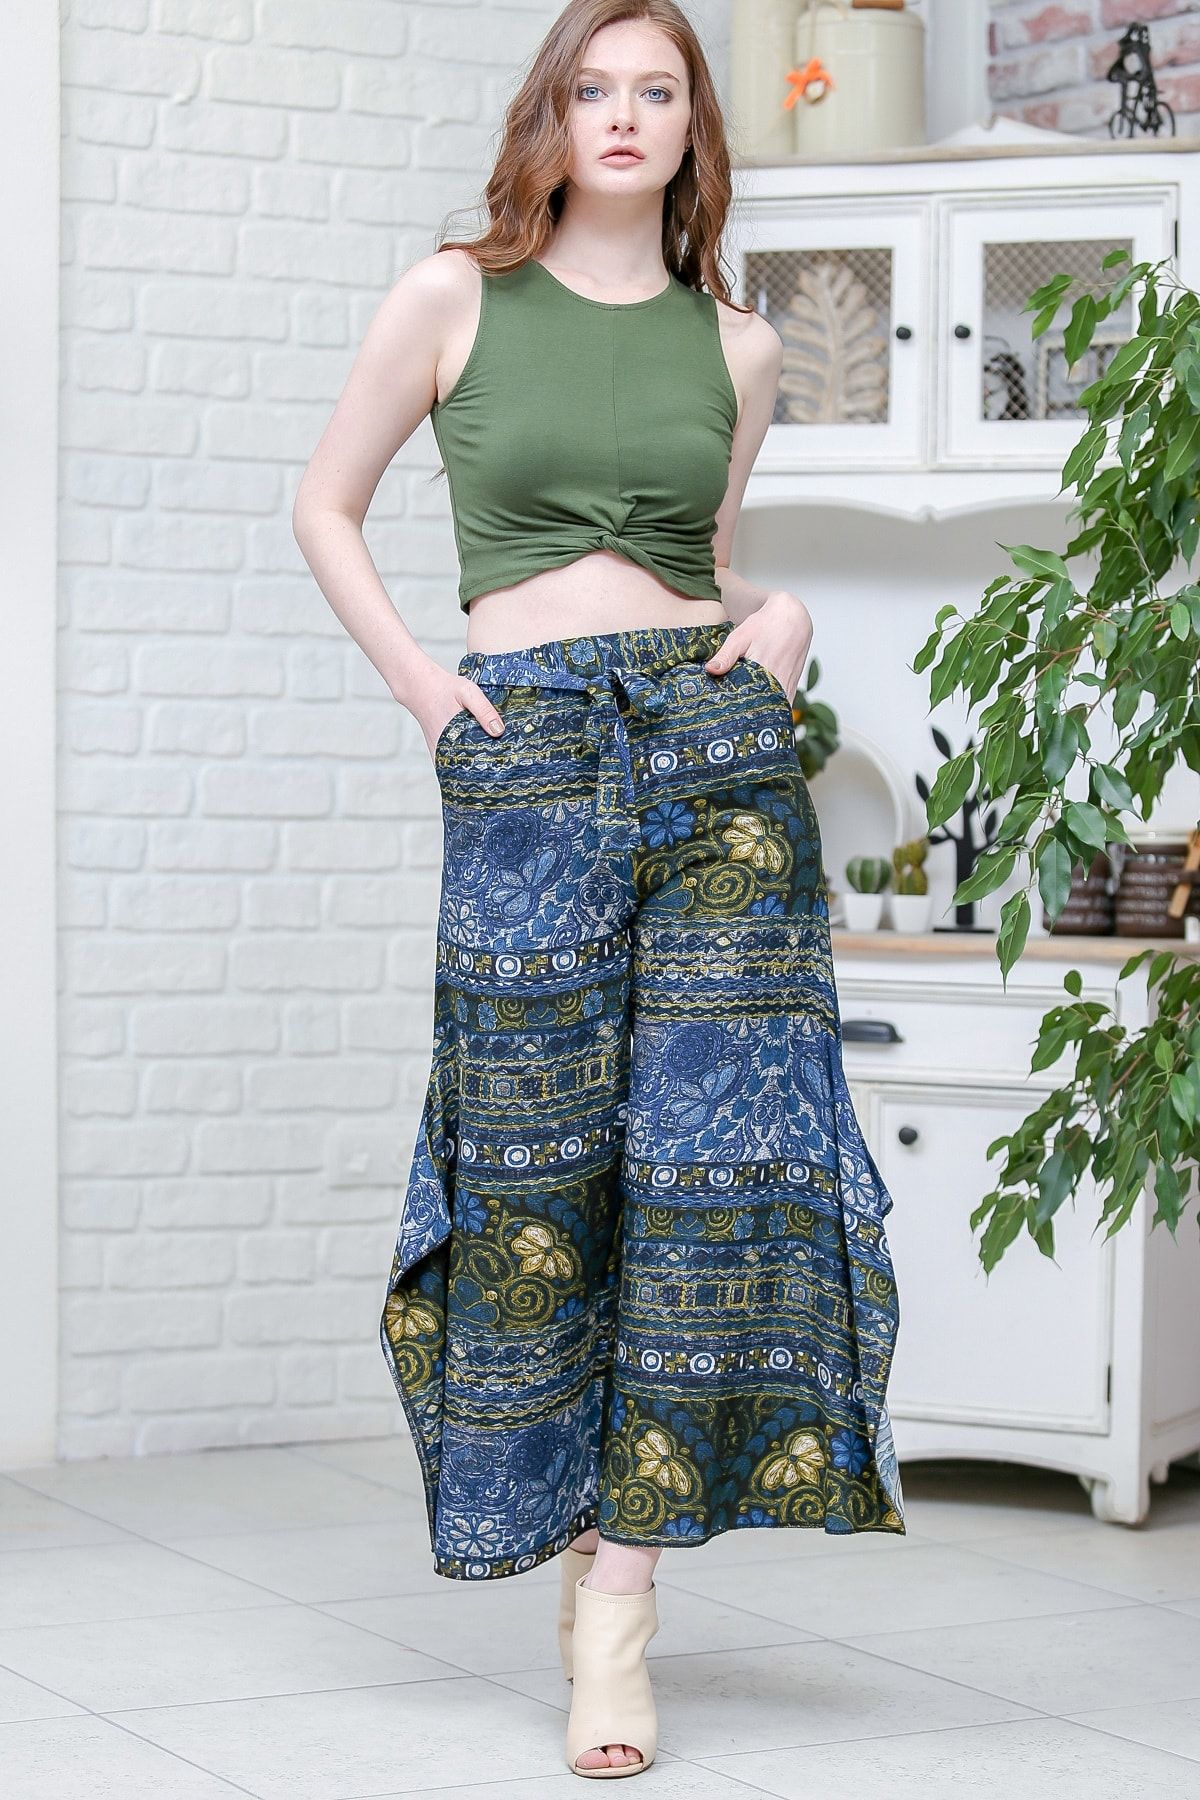 Chiccy Kadın Yeşil-Mavi Vintage Çiçek Desenli Yanları Yırtmaç Detaylı Pantolon M10060000PN99170